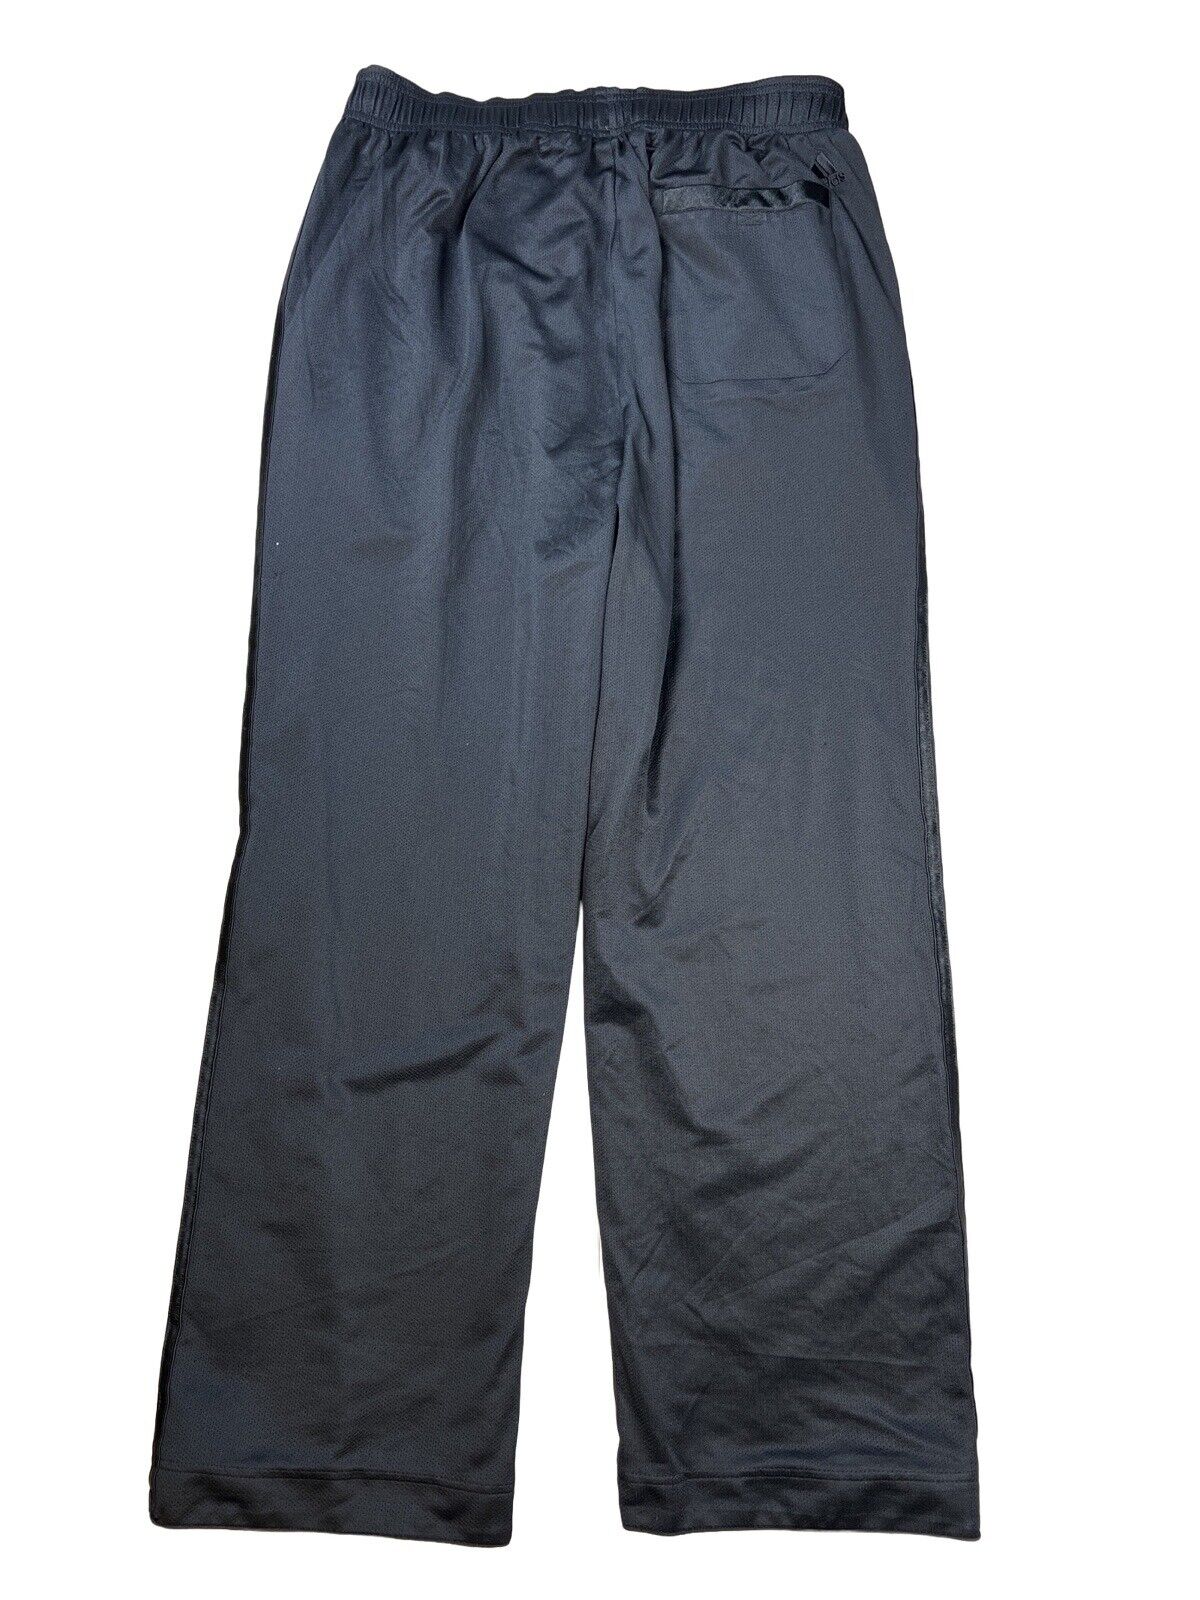 adidas Pantalones deportivos con forro de malla para hombre, color negro, XL